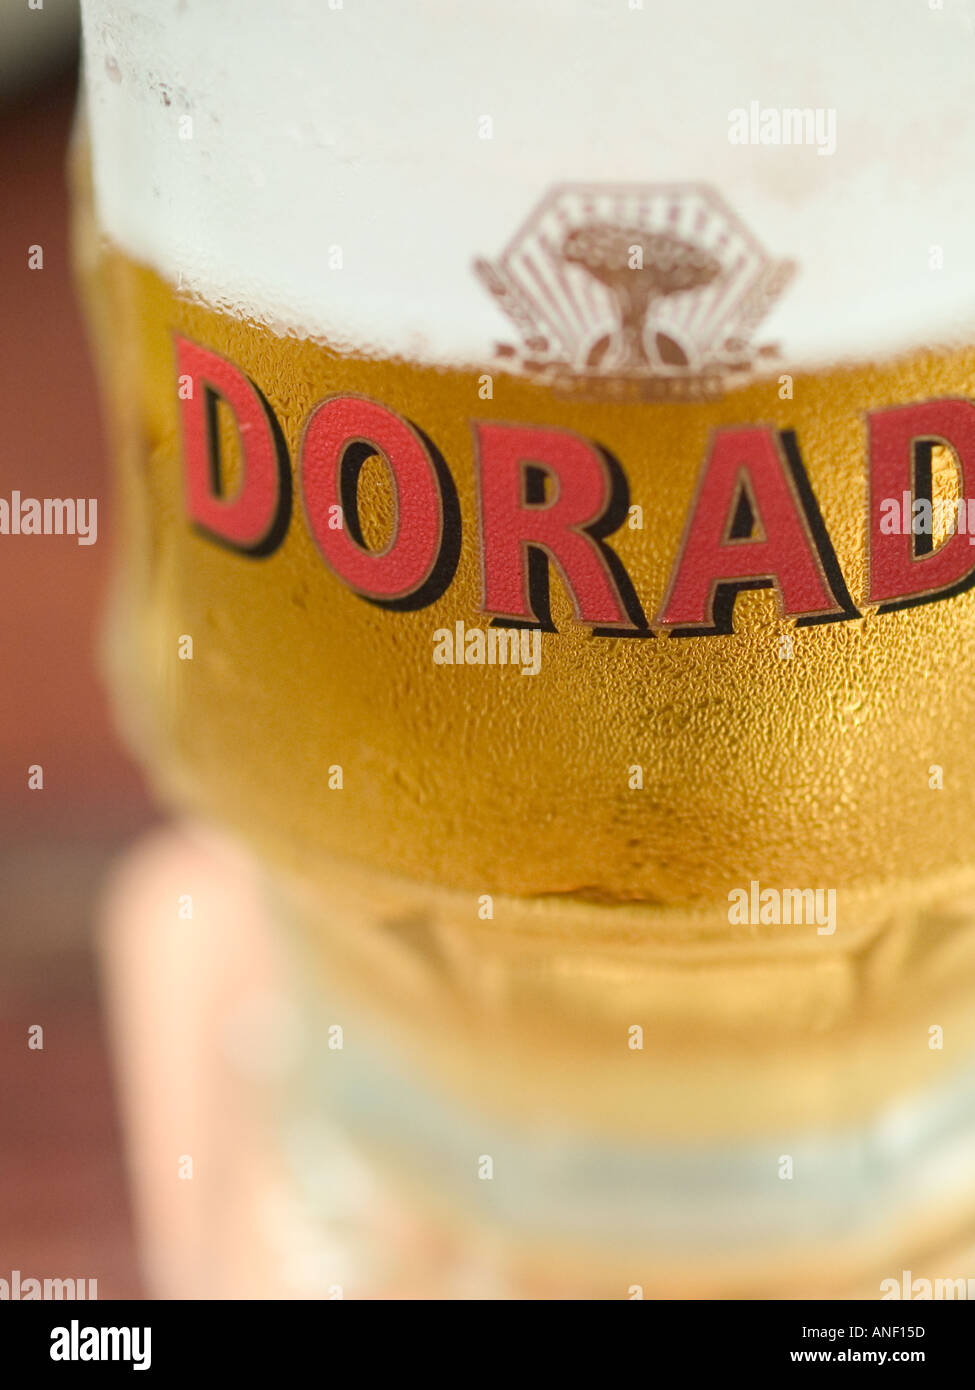 Dorada spanische Bier scharf auf kleine Zone nur Stockfotografie - Alamy